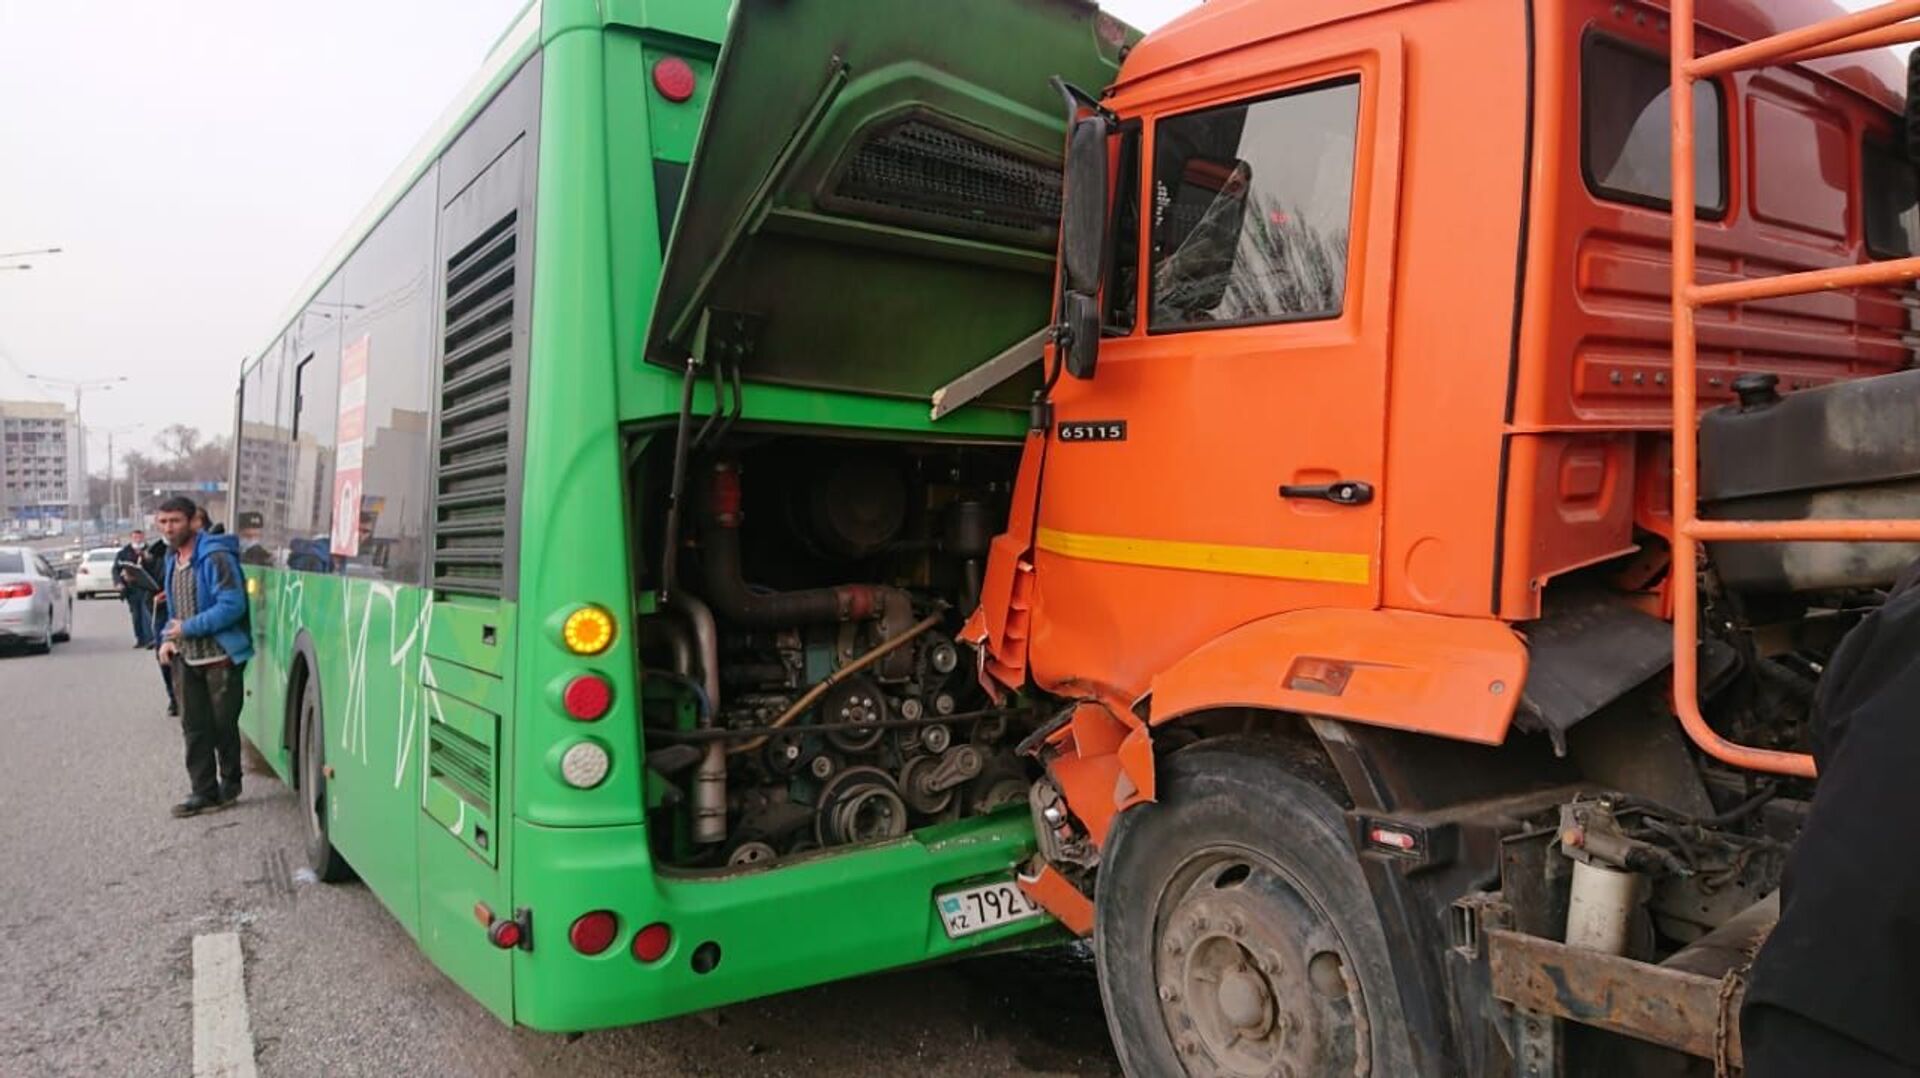 Массовое ДТП с маршрутным автобусом произошло в Алматы: есть пострадавшие - Sputnik Казахстан, 1920, 07.04.2021